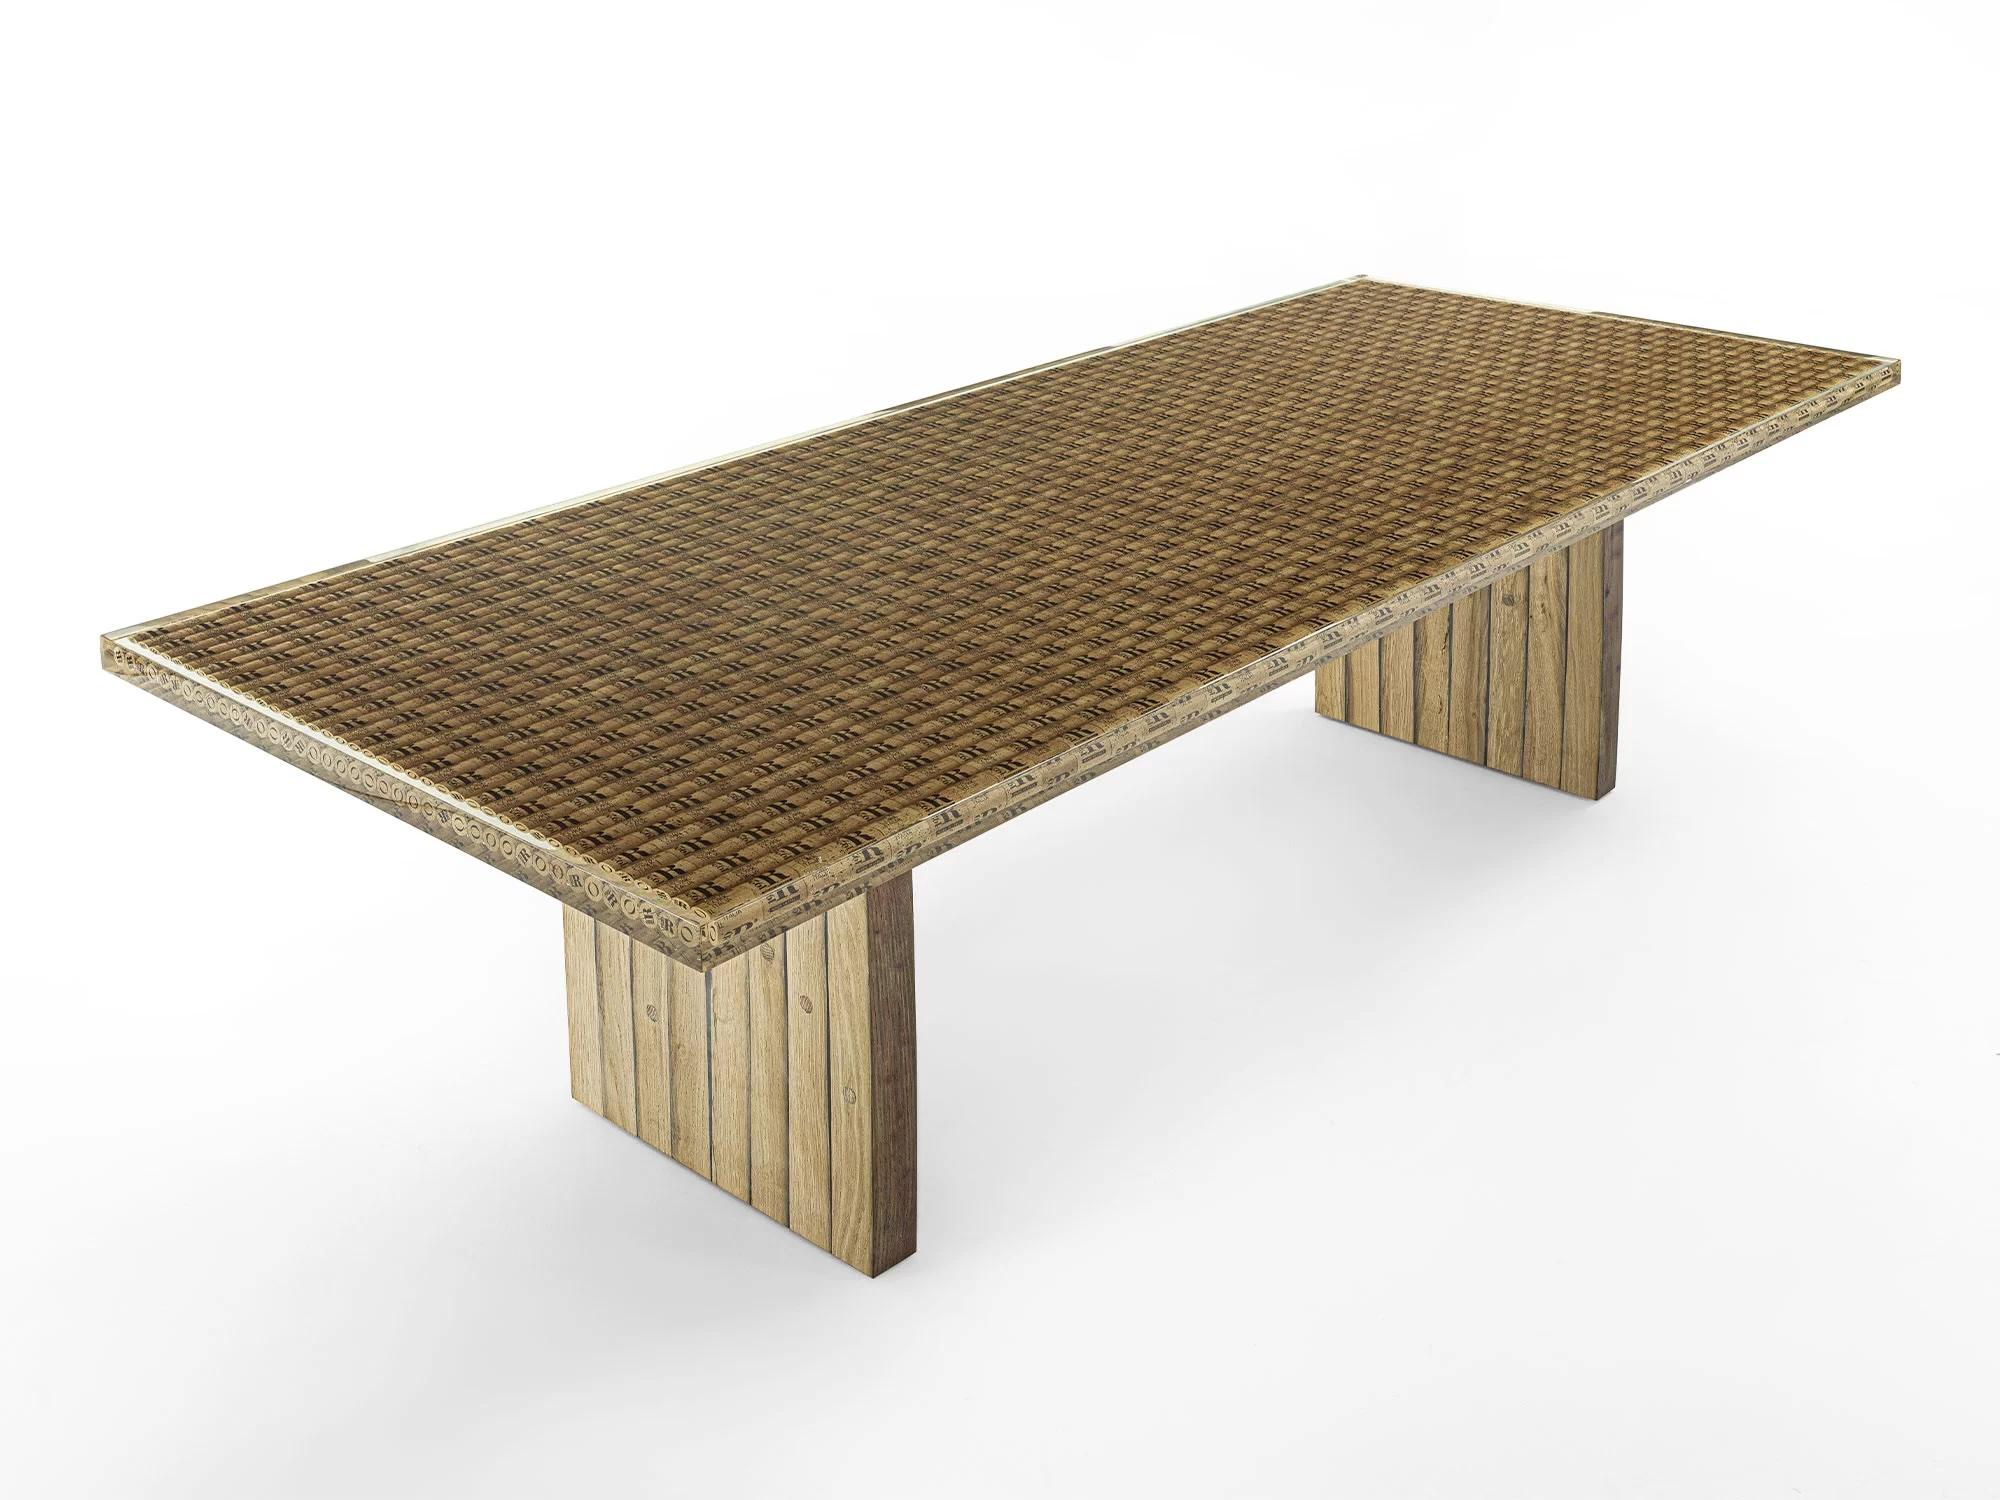 Tisch mit einem Untergestell aus Eichenholz von Barriques und einer Platte aus mit Harz überzogenen Korkflaschenverschlüssen.

Entworfen von Authentic Design und hergestellt in Italien 